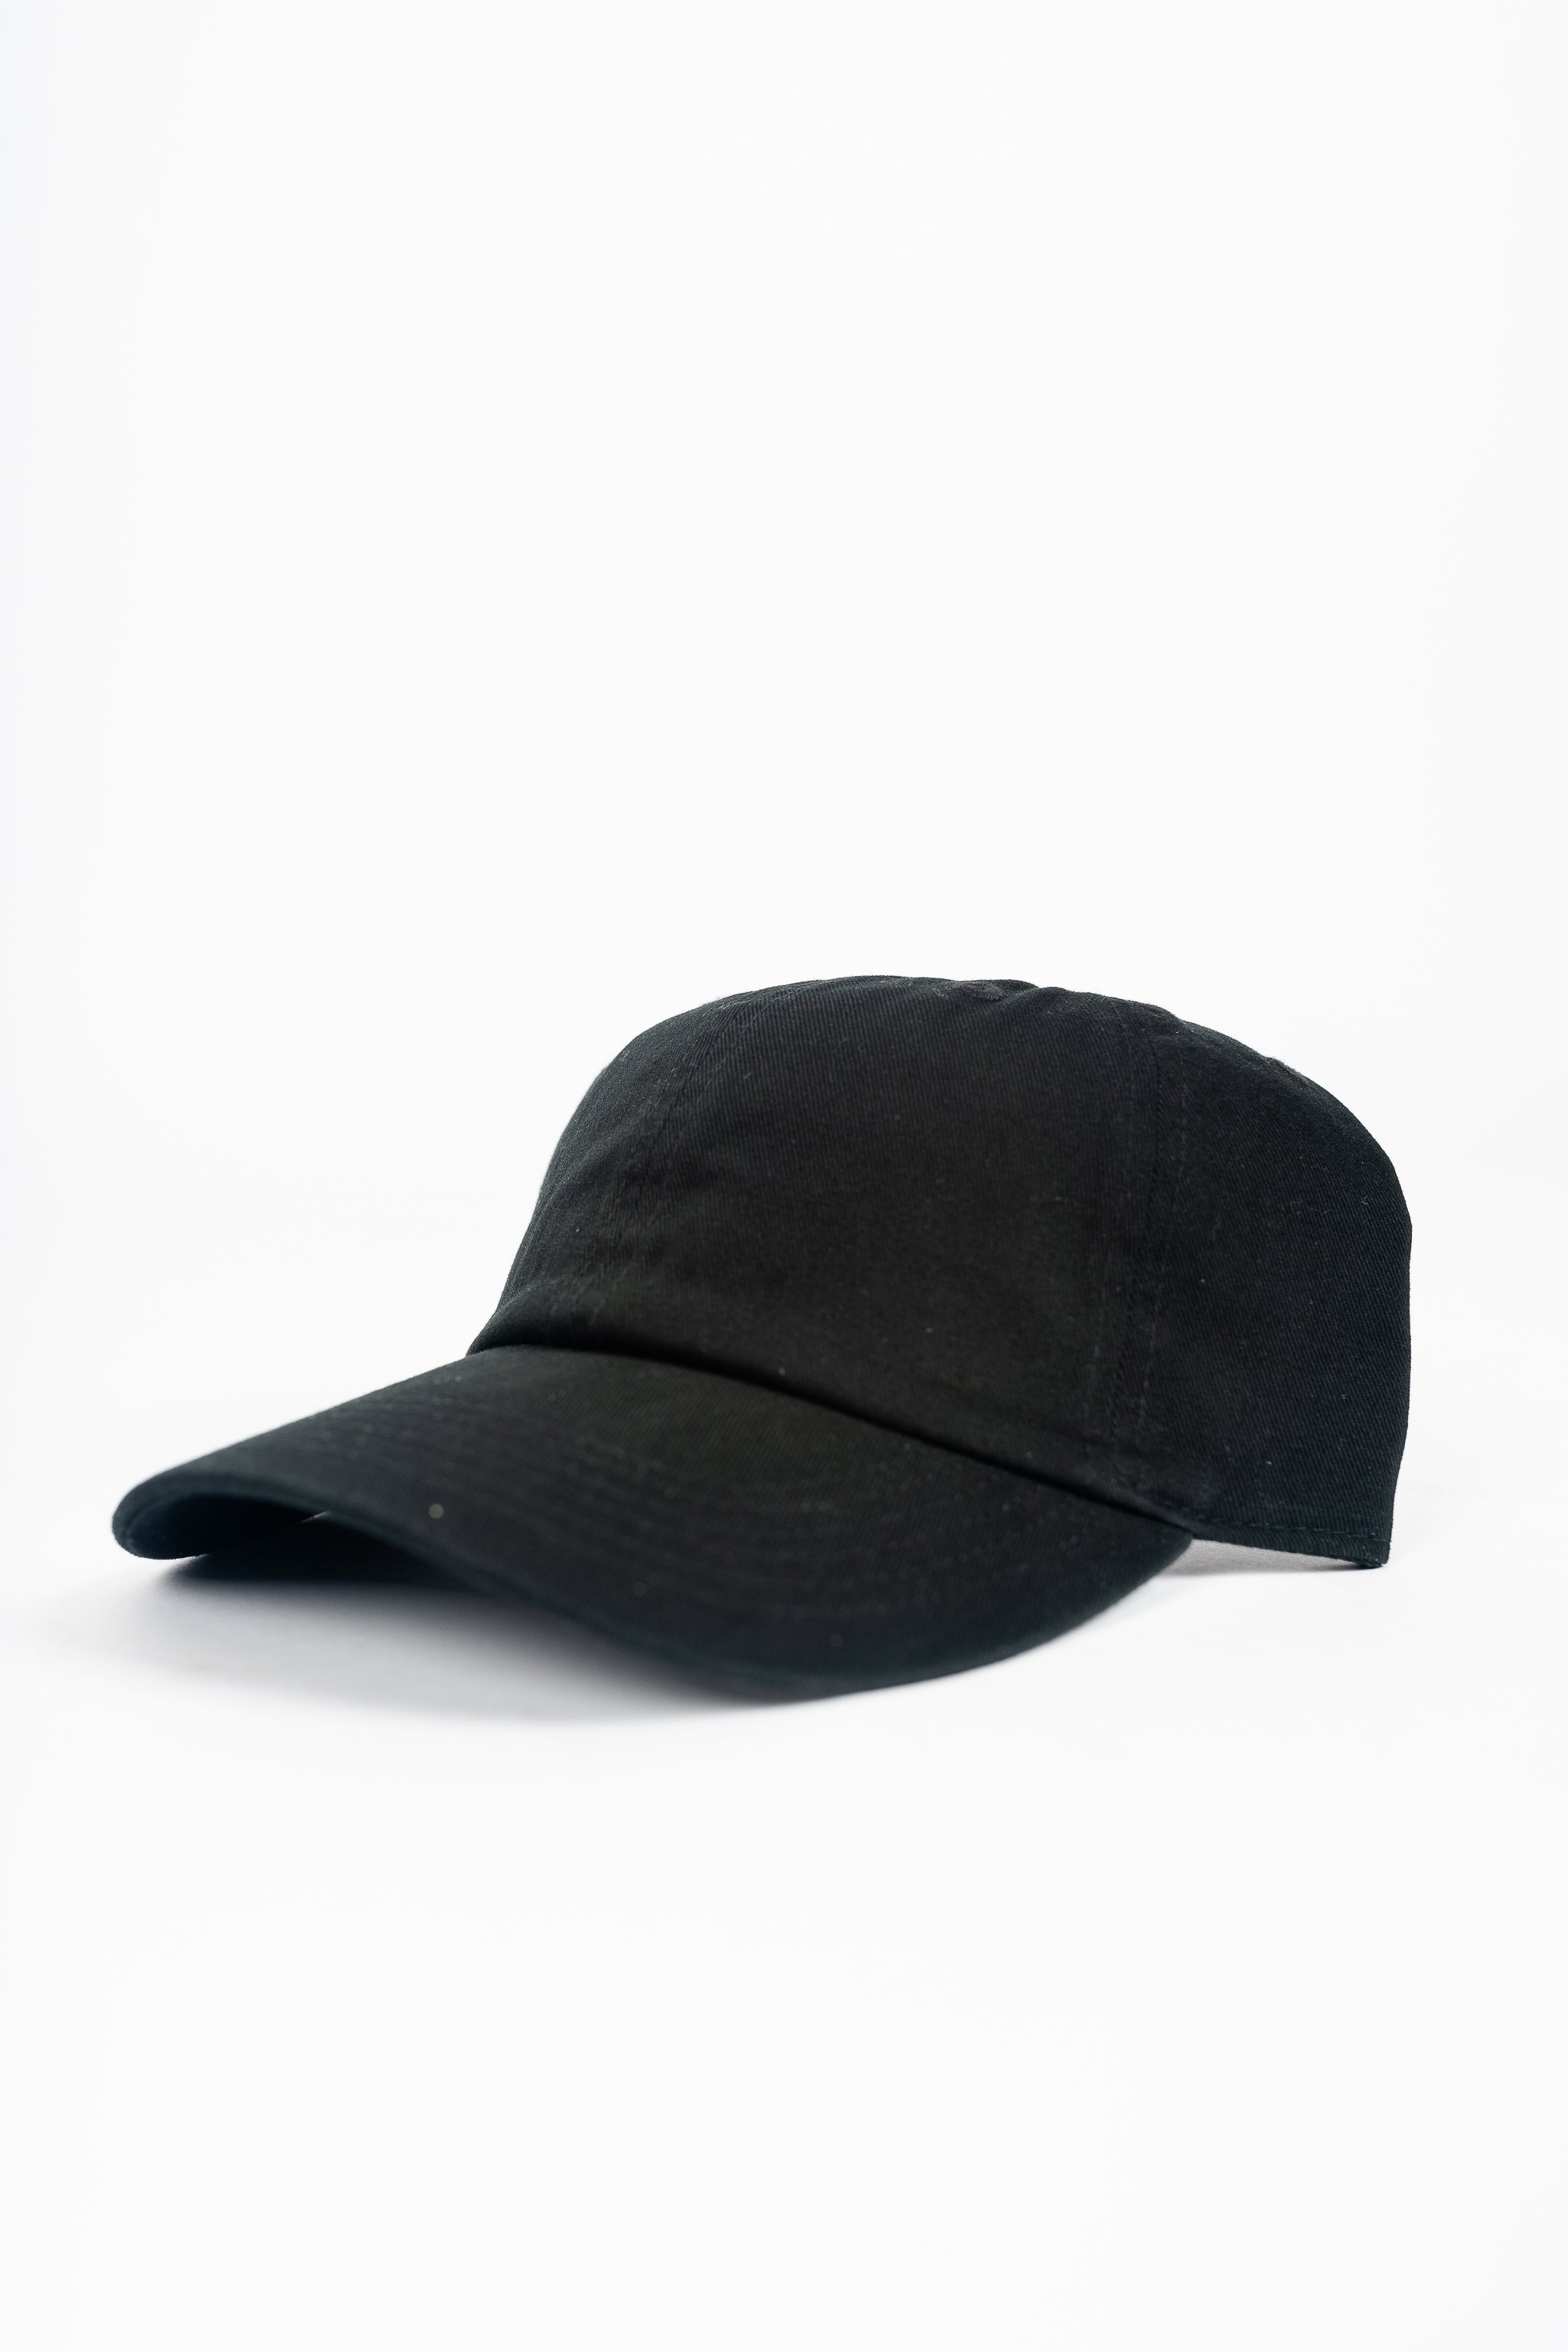 Slack Liner Trucker Hat Black / One Size